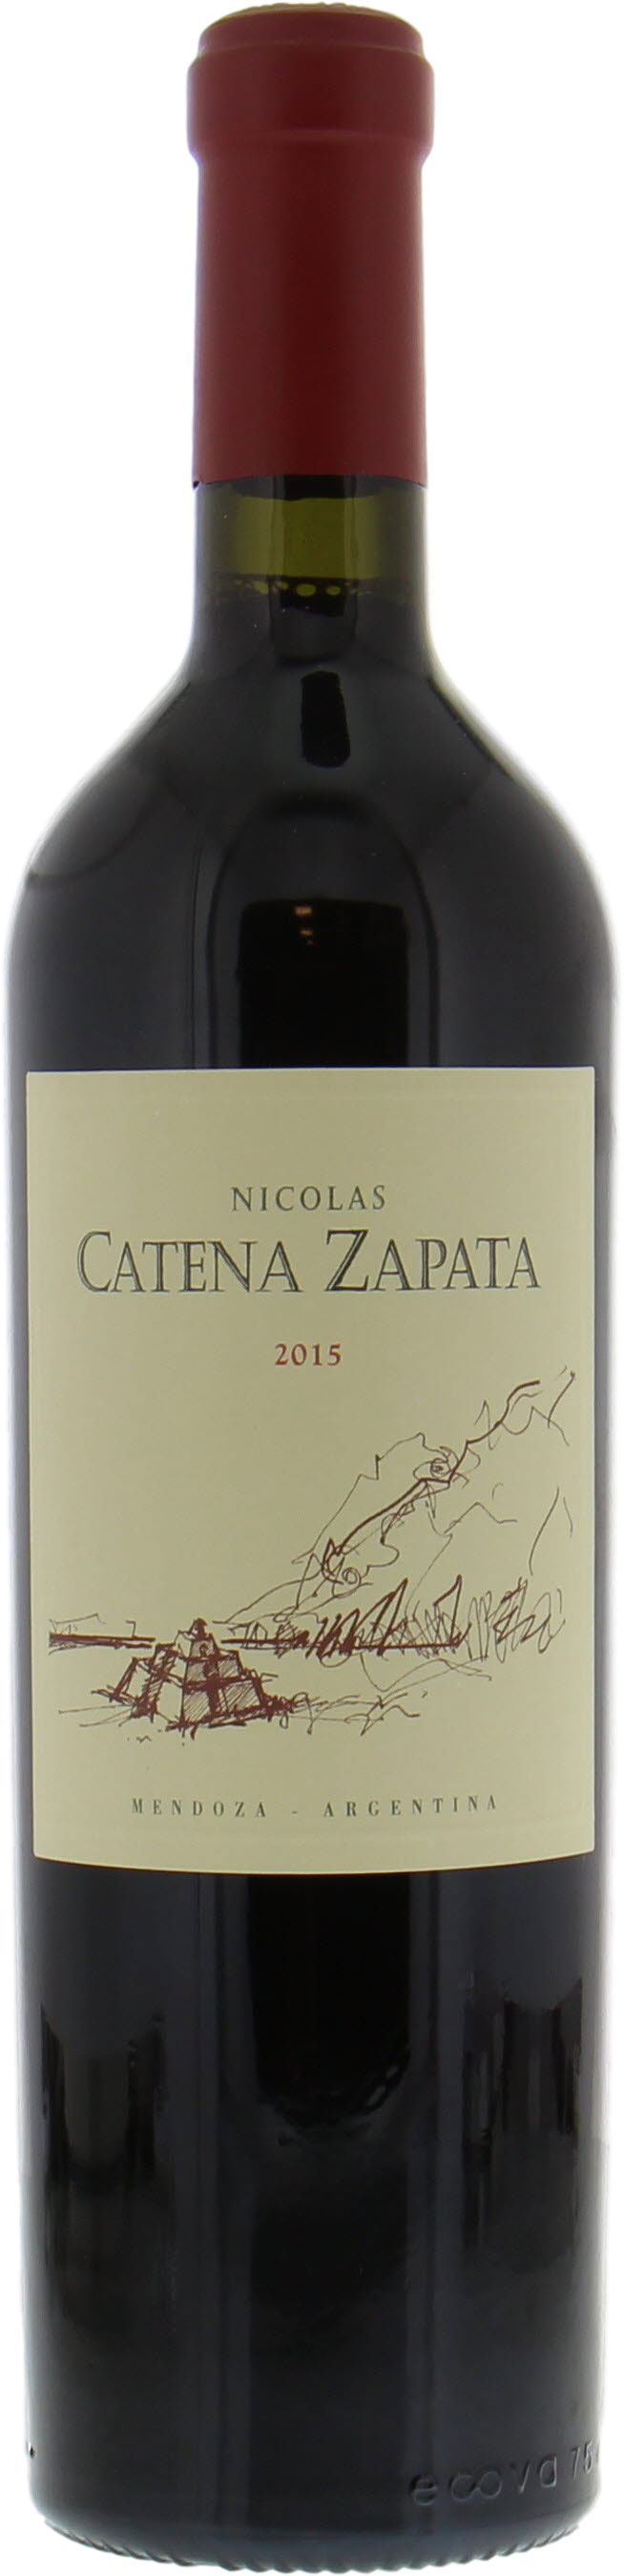 Catena Zapata - Nicolas Catena 2015 Perfect